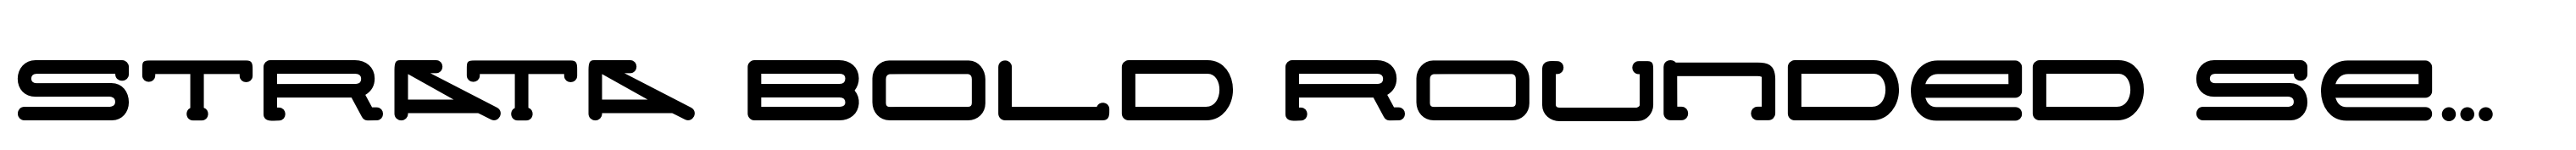 Strata Bold Rounded Serif